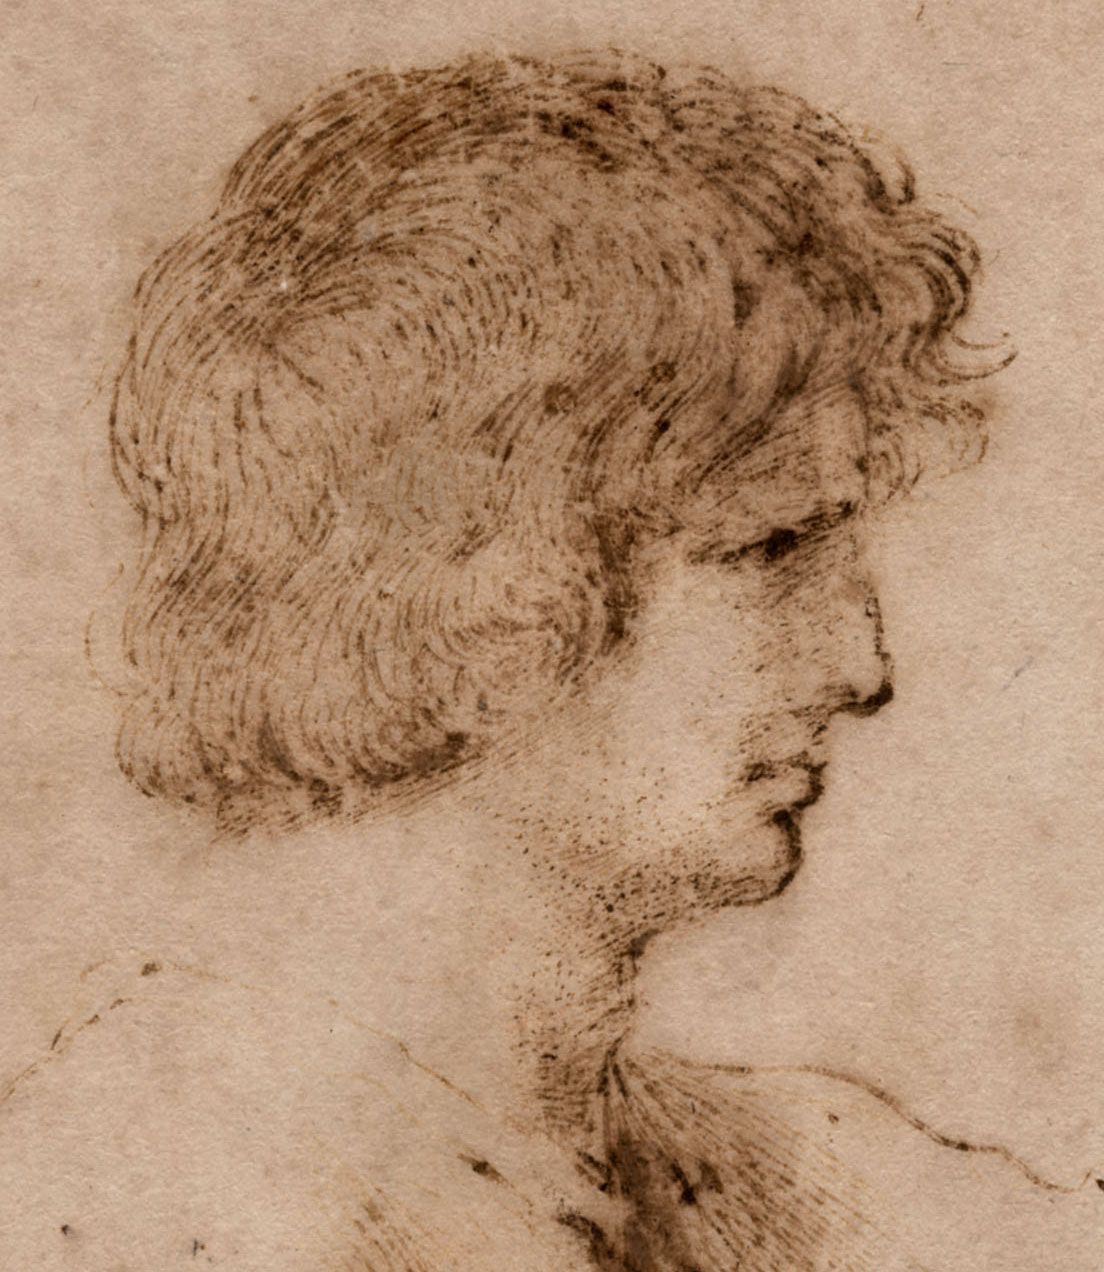 Giovanni Battista Barbieri, called Guercino